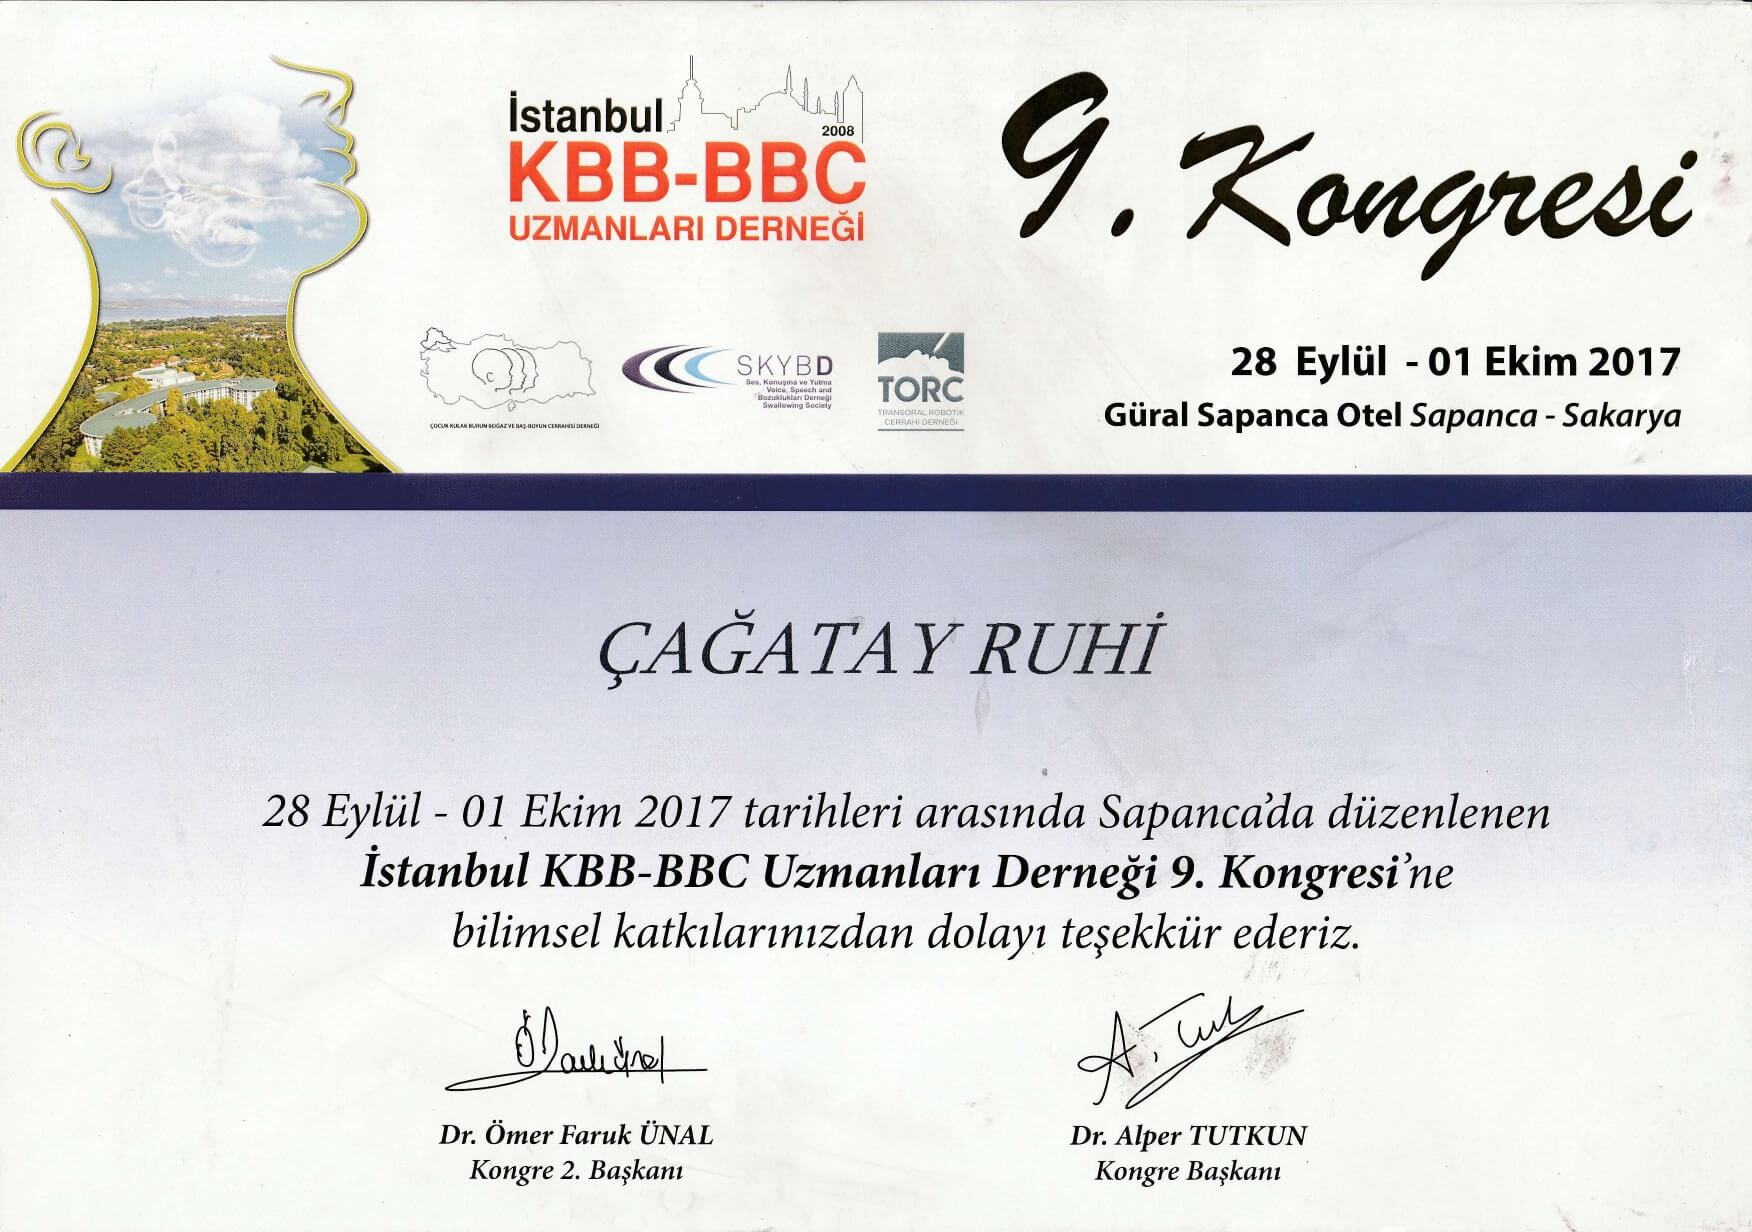 İstanbul KBB-BBC Uzmanlar Derneği Kongresi